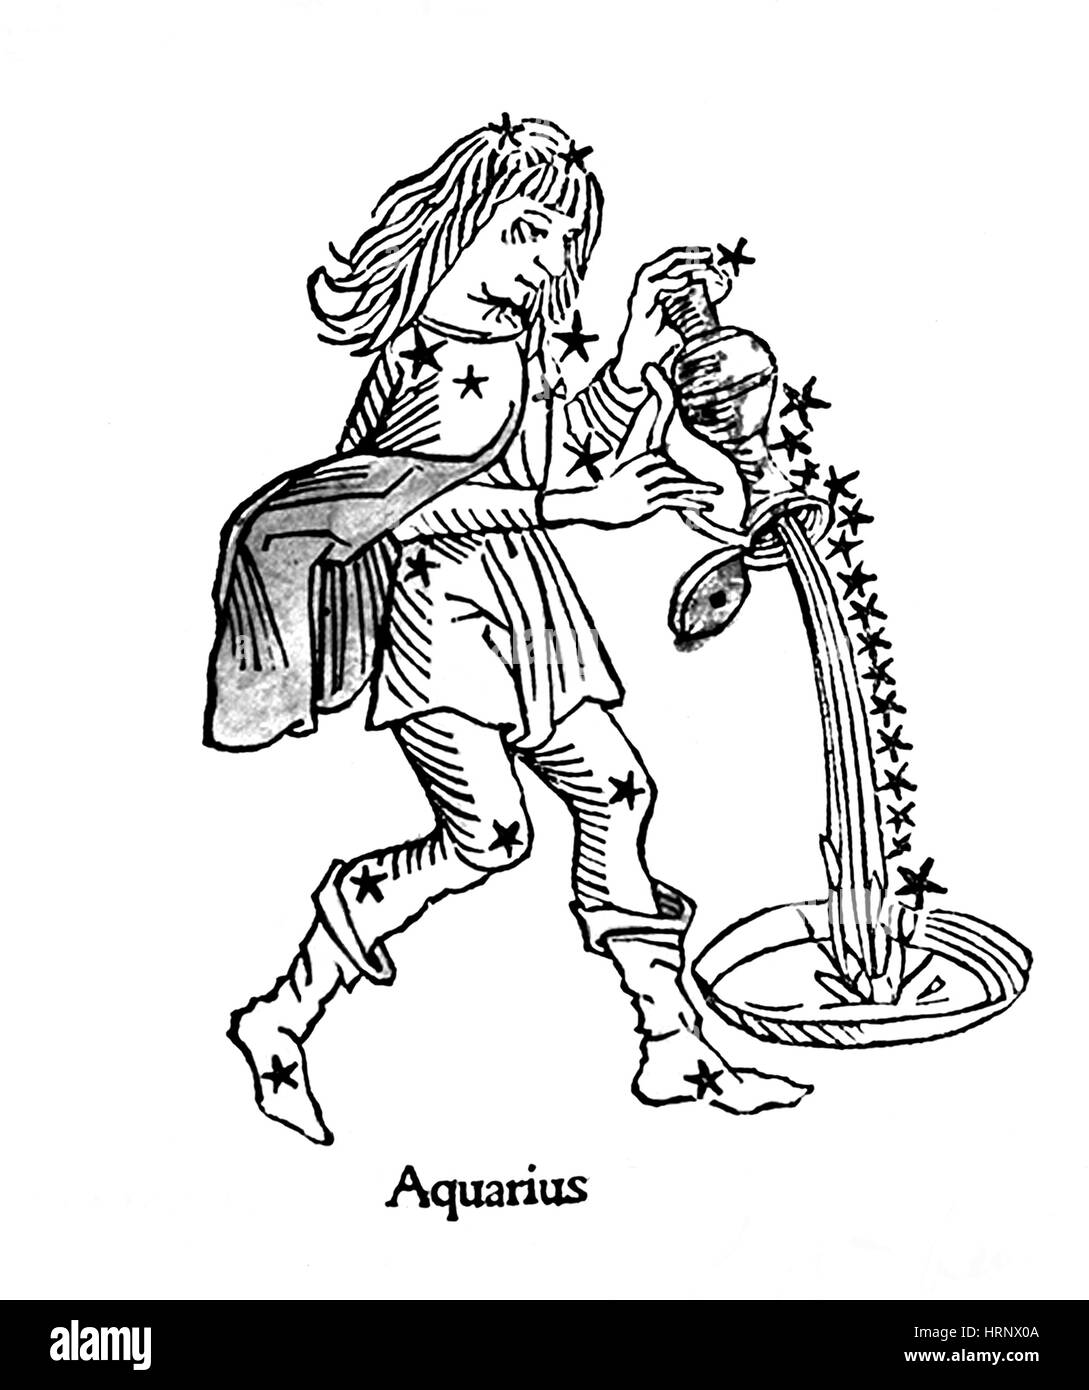 Aquarius Constellation, Zodiac Sign, 1482 Stock Photo